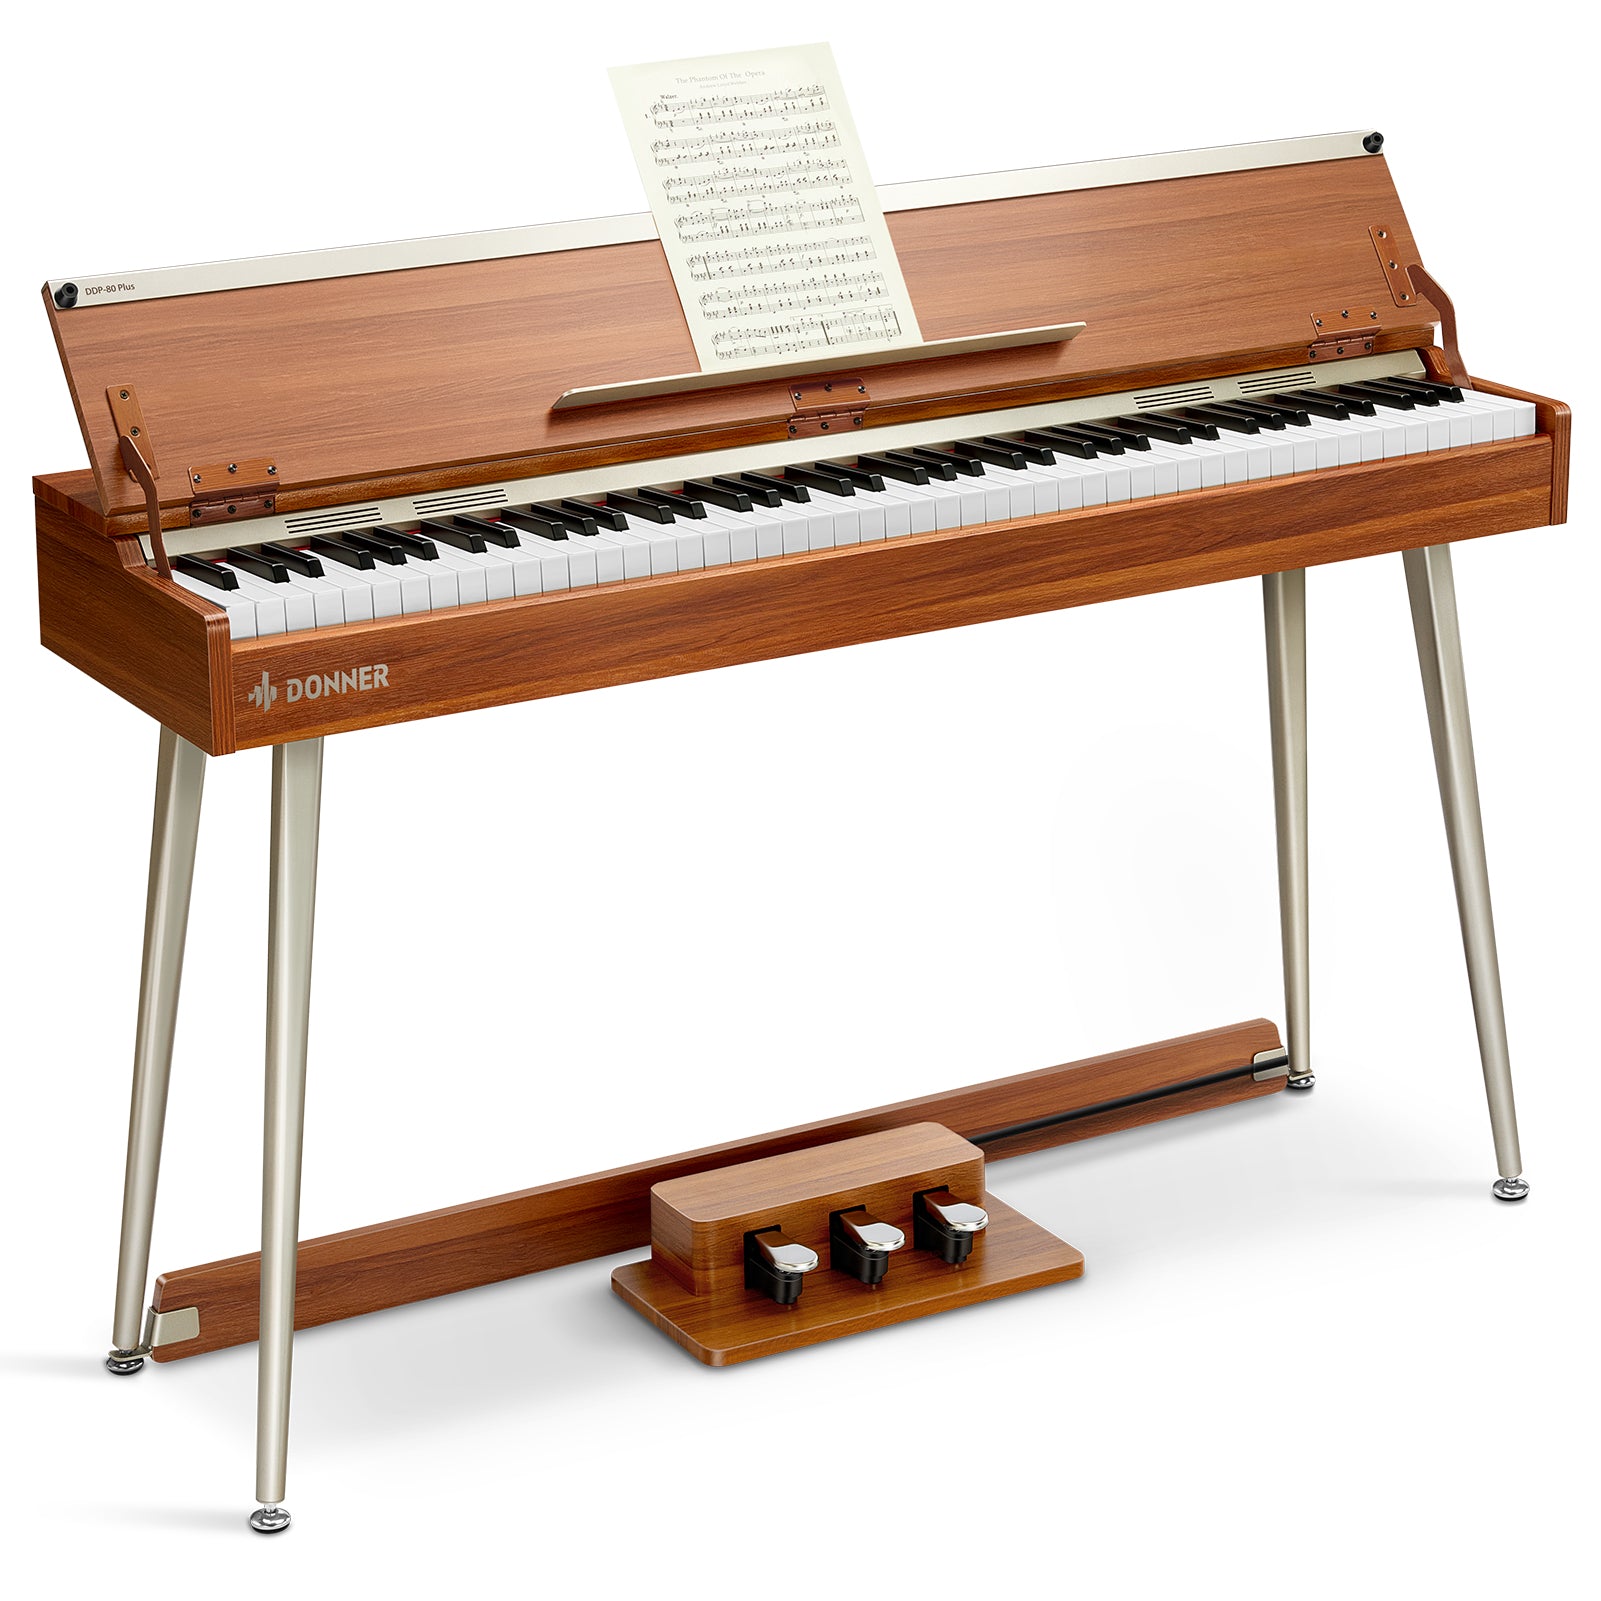 Donner DDP-80 PLUS Digitalpiano Minimalistisches Holzdesign - DDP-80 PLUS Piano von Donner